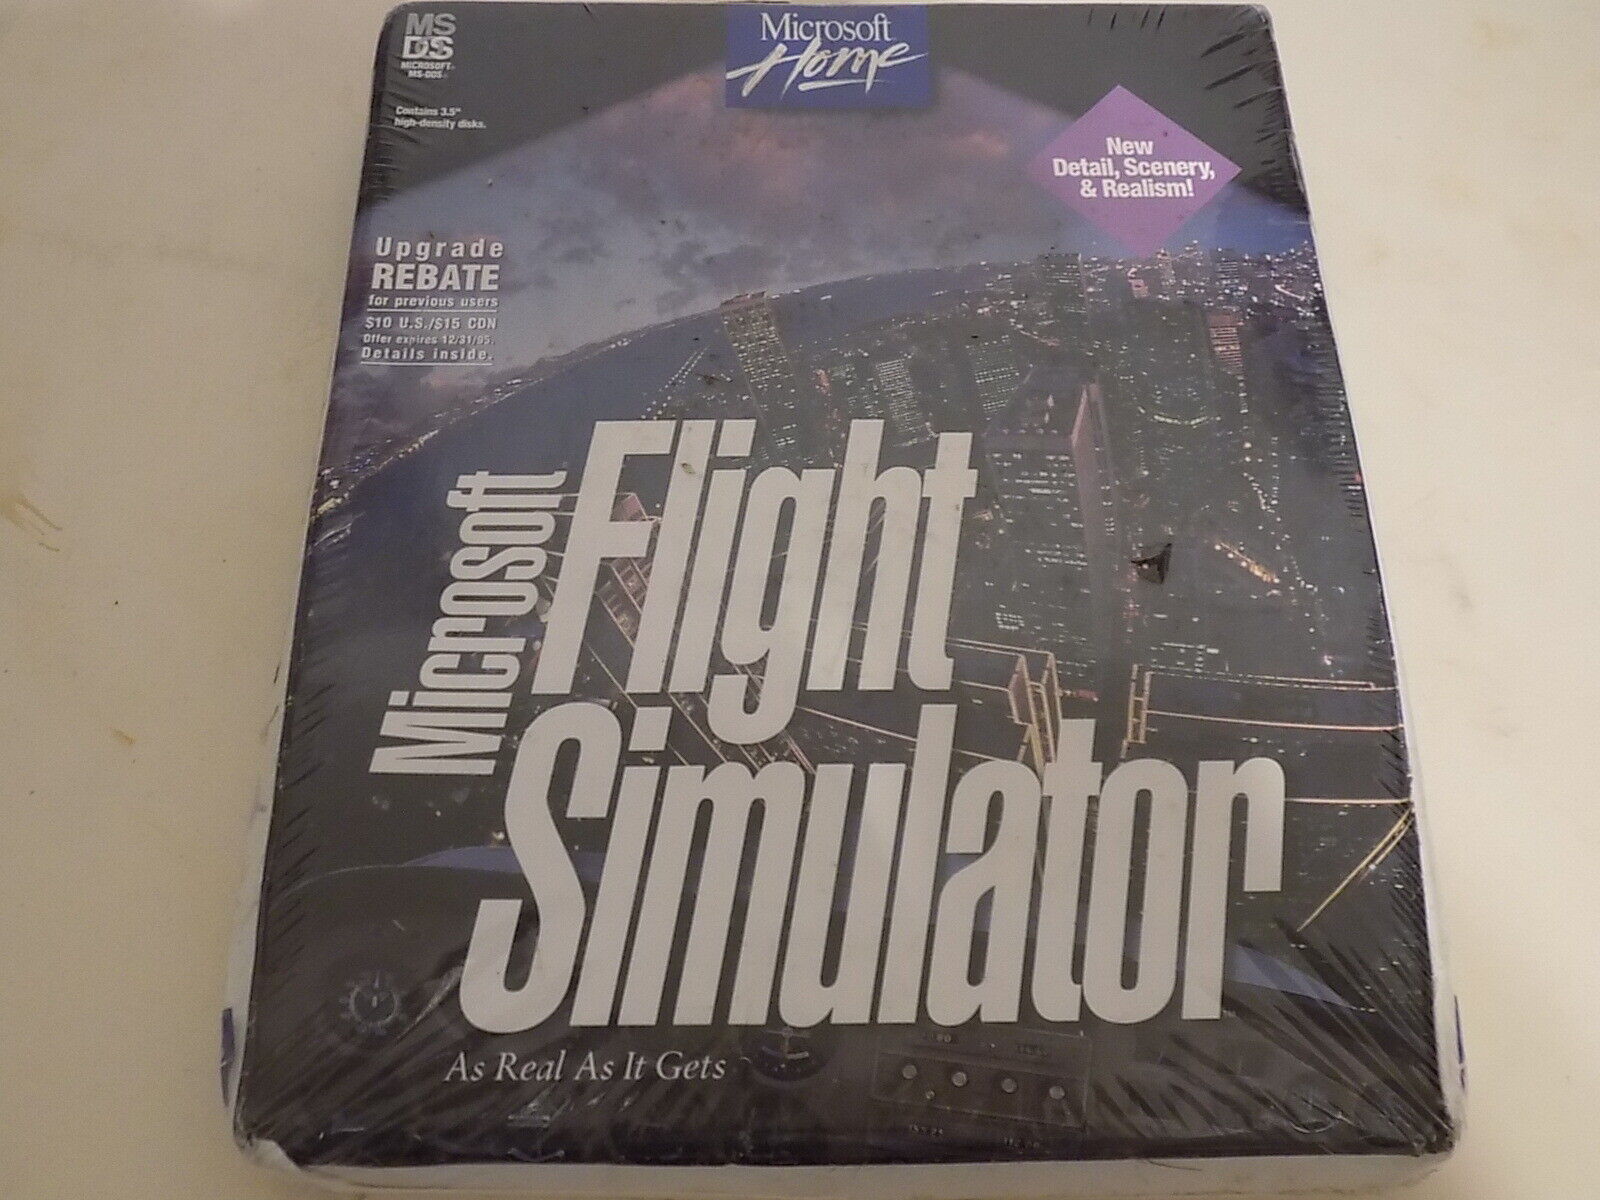 Vintage SEALED Microsoft Flight Simulator 5.1 on 3.5 Disks 1995